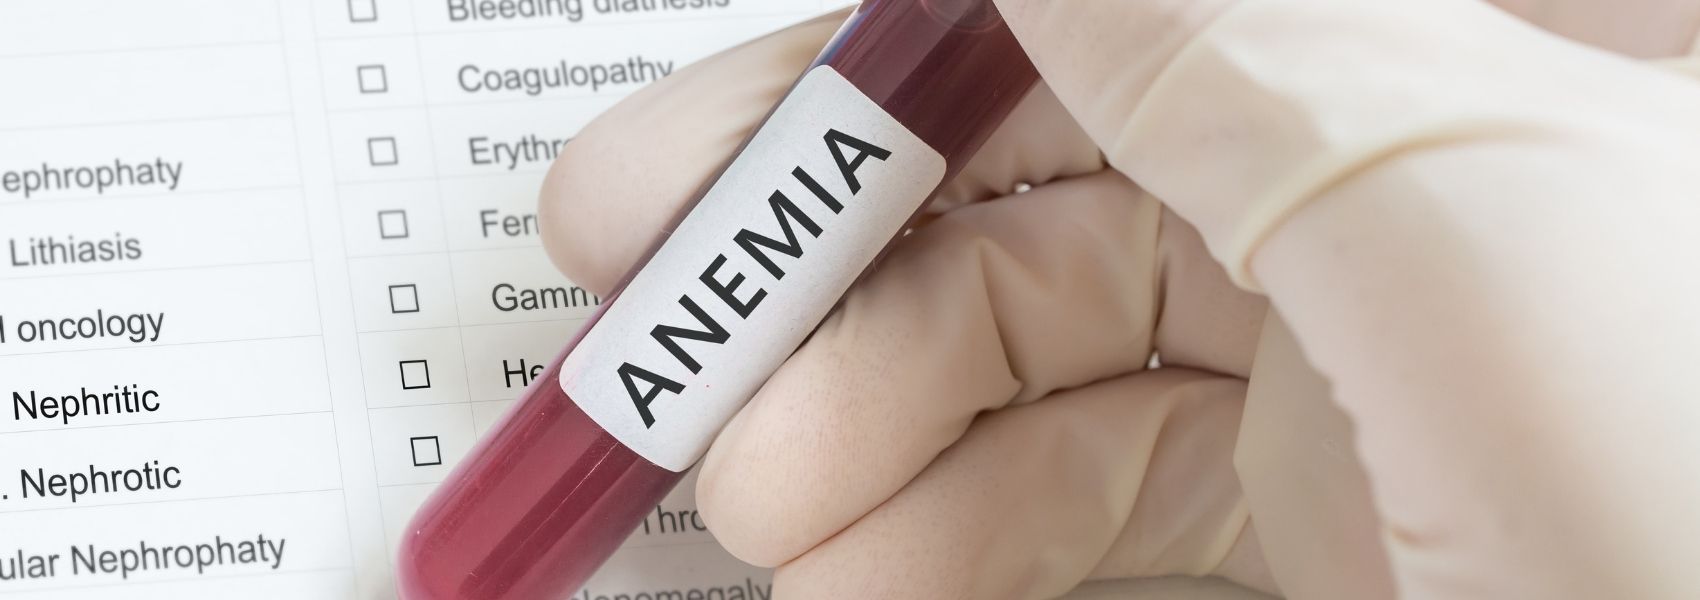 rastreios da anemia